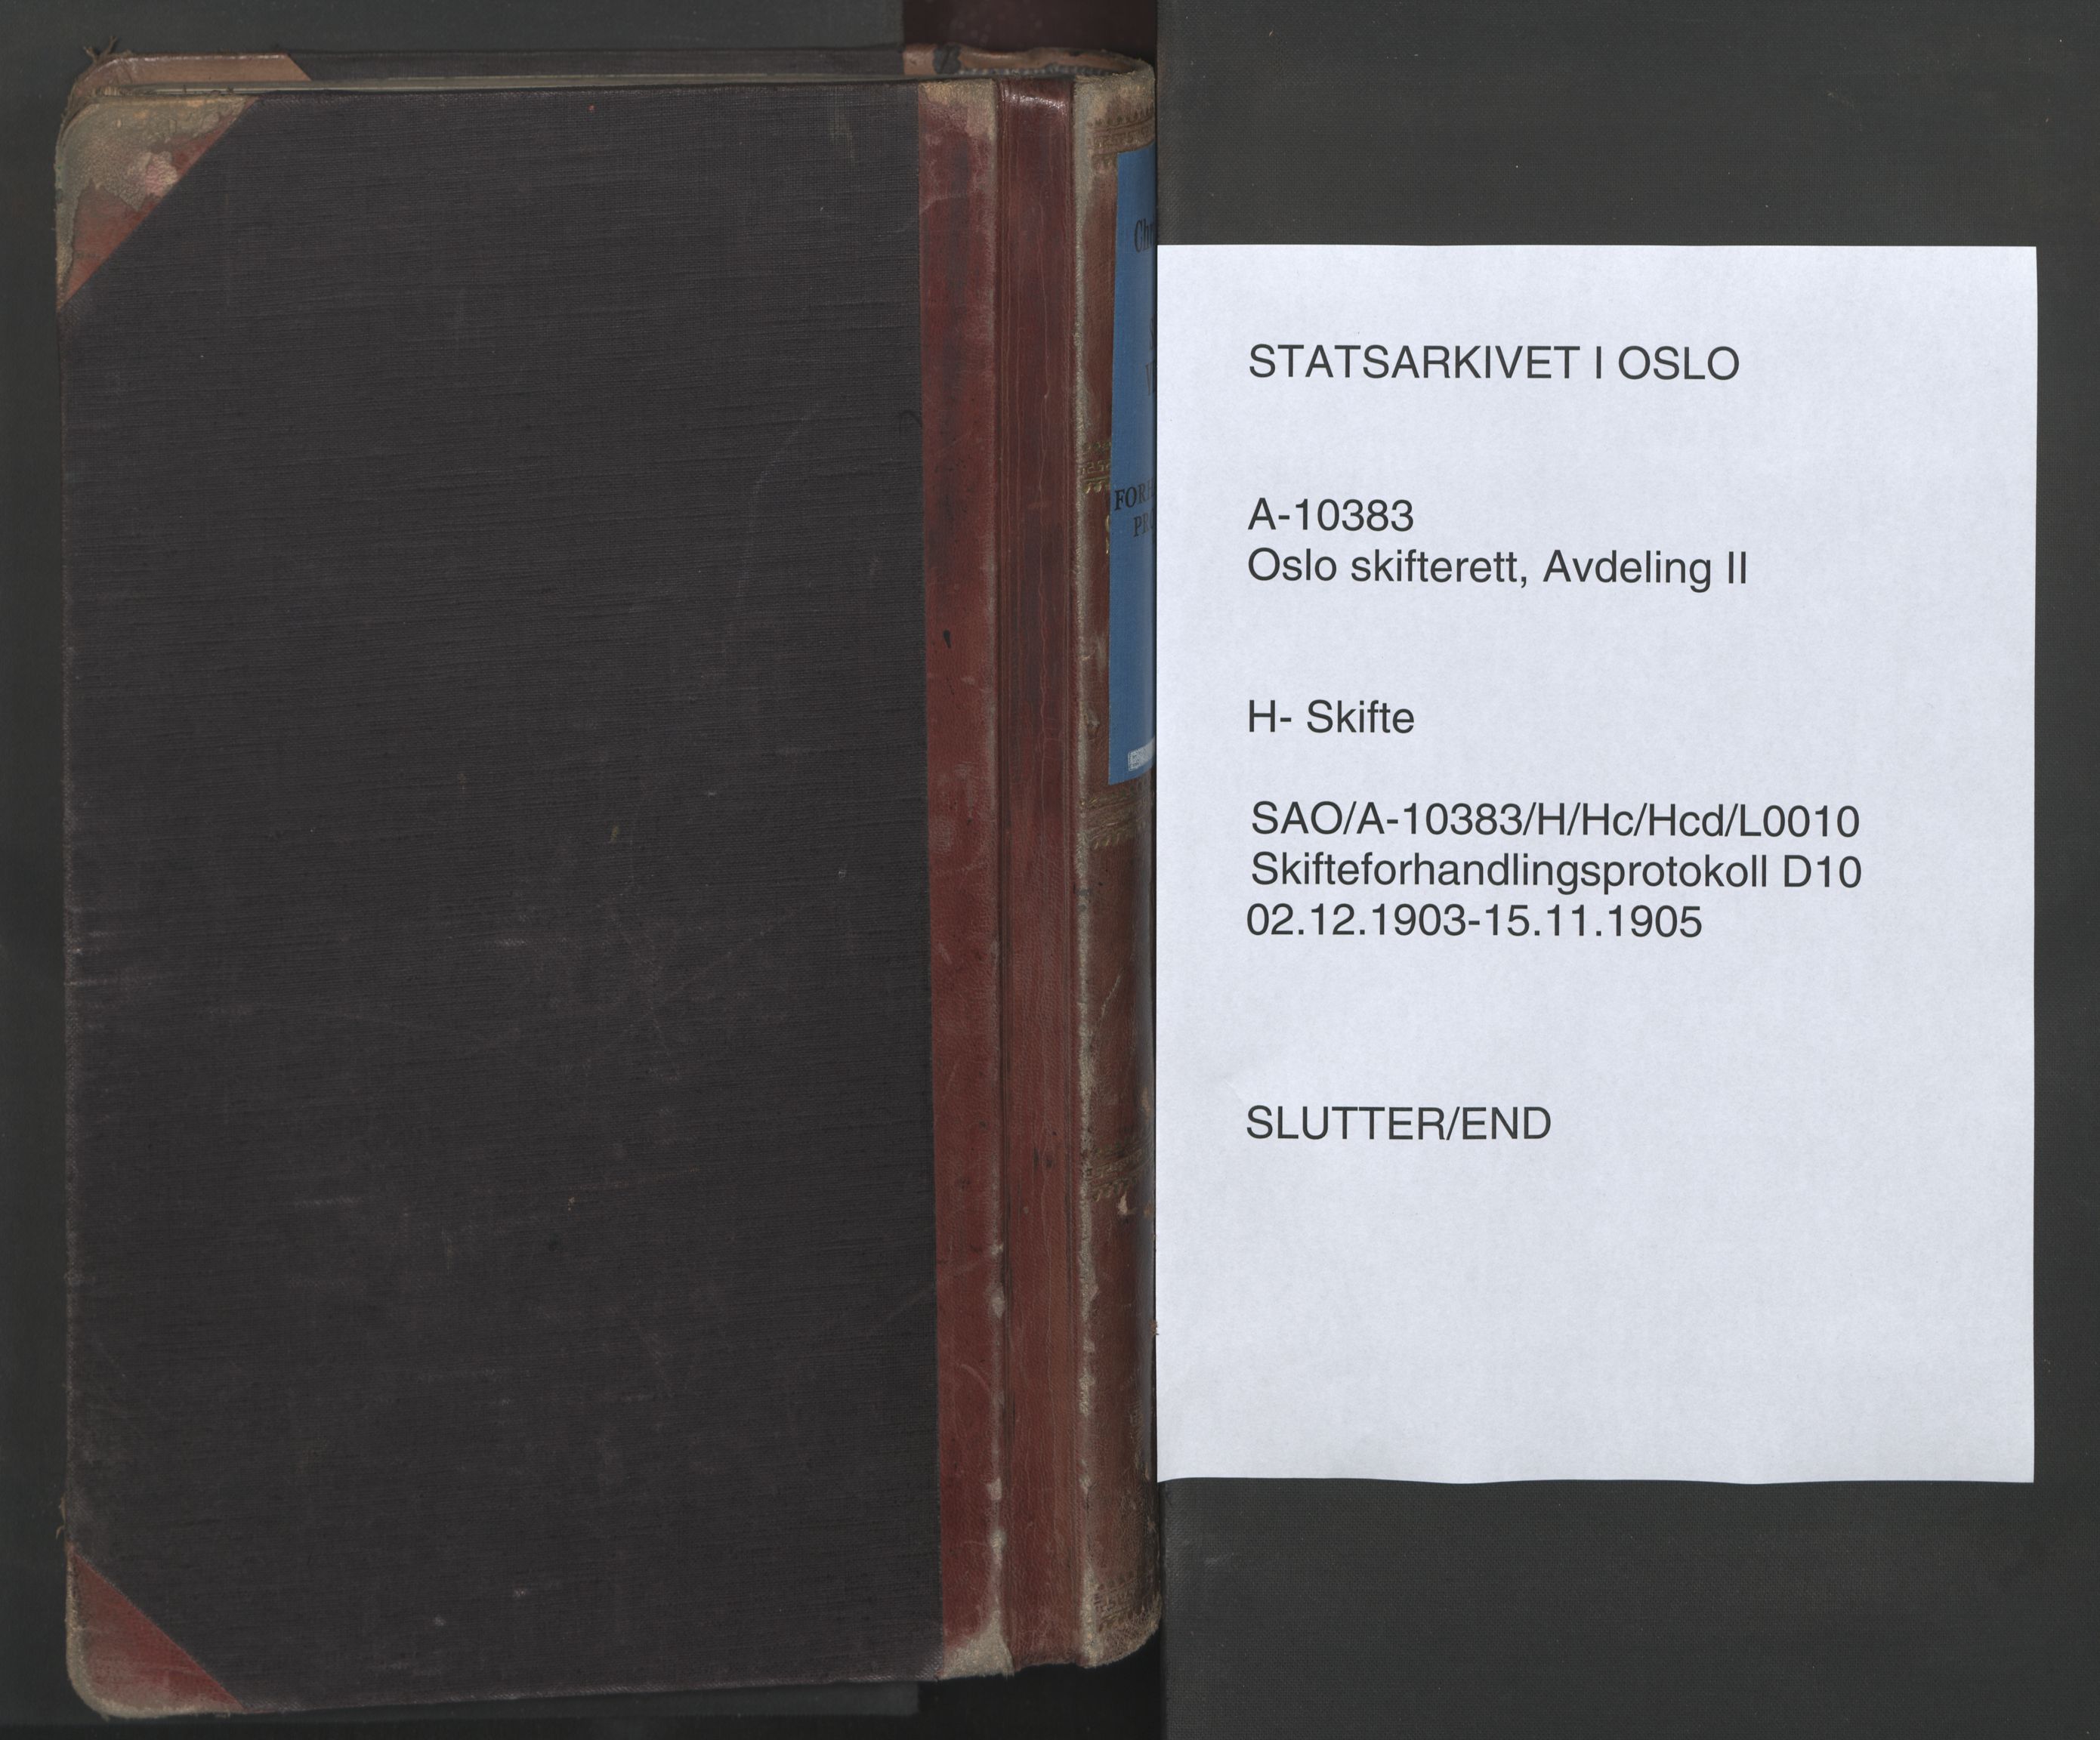 Oslo skifterett, SAO/A-10383/H/Hc/Hcd/L0010: Skifteforhandlingsprotokoll, 1903-1905